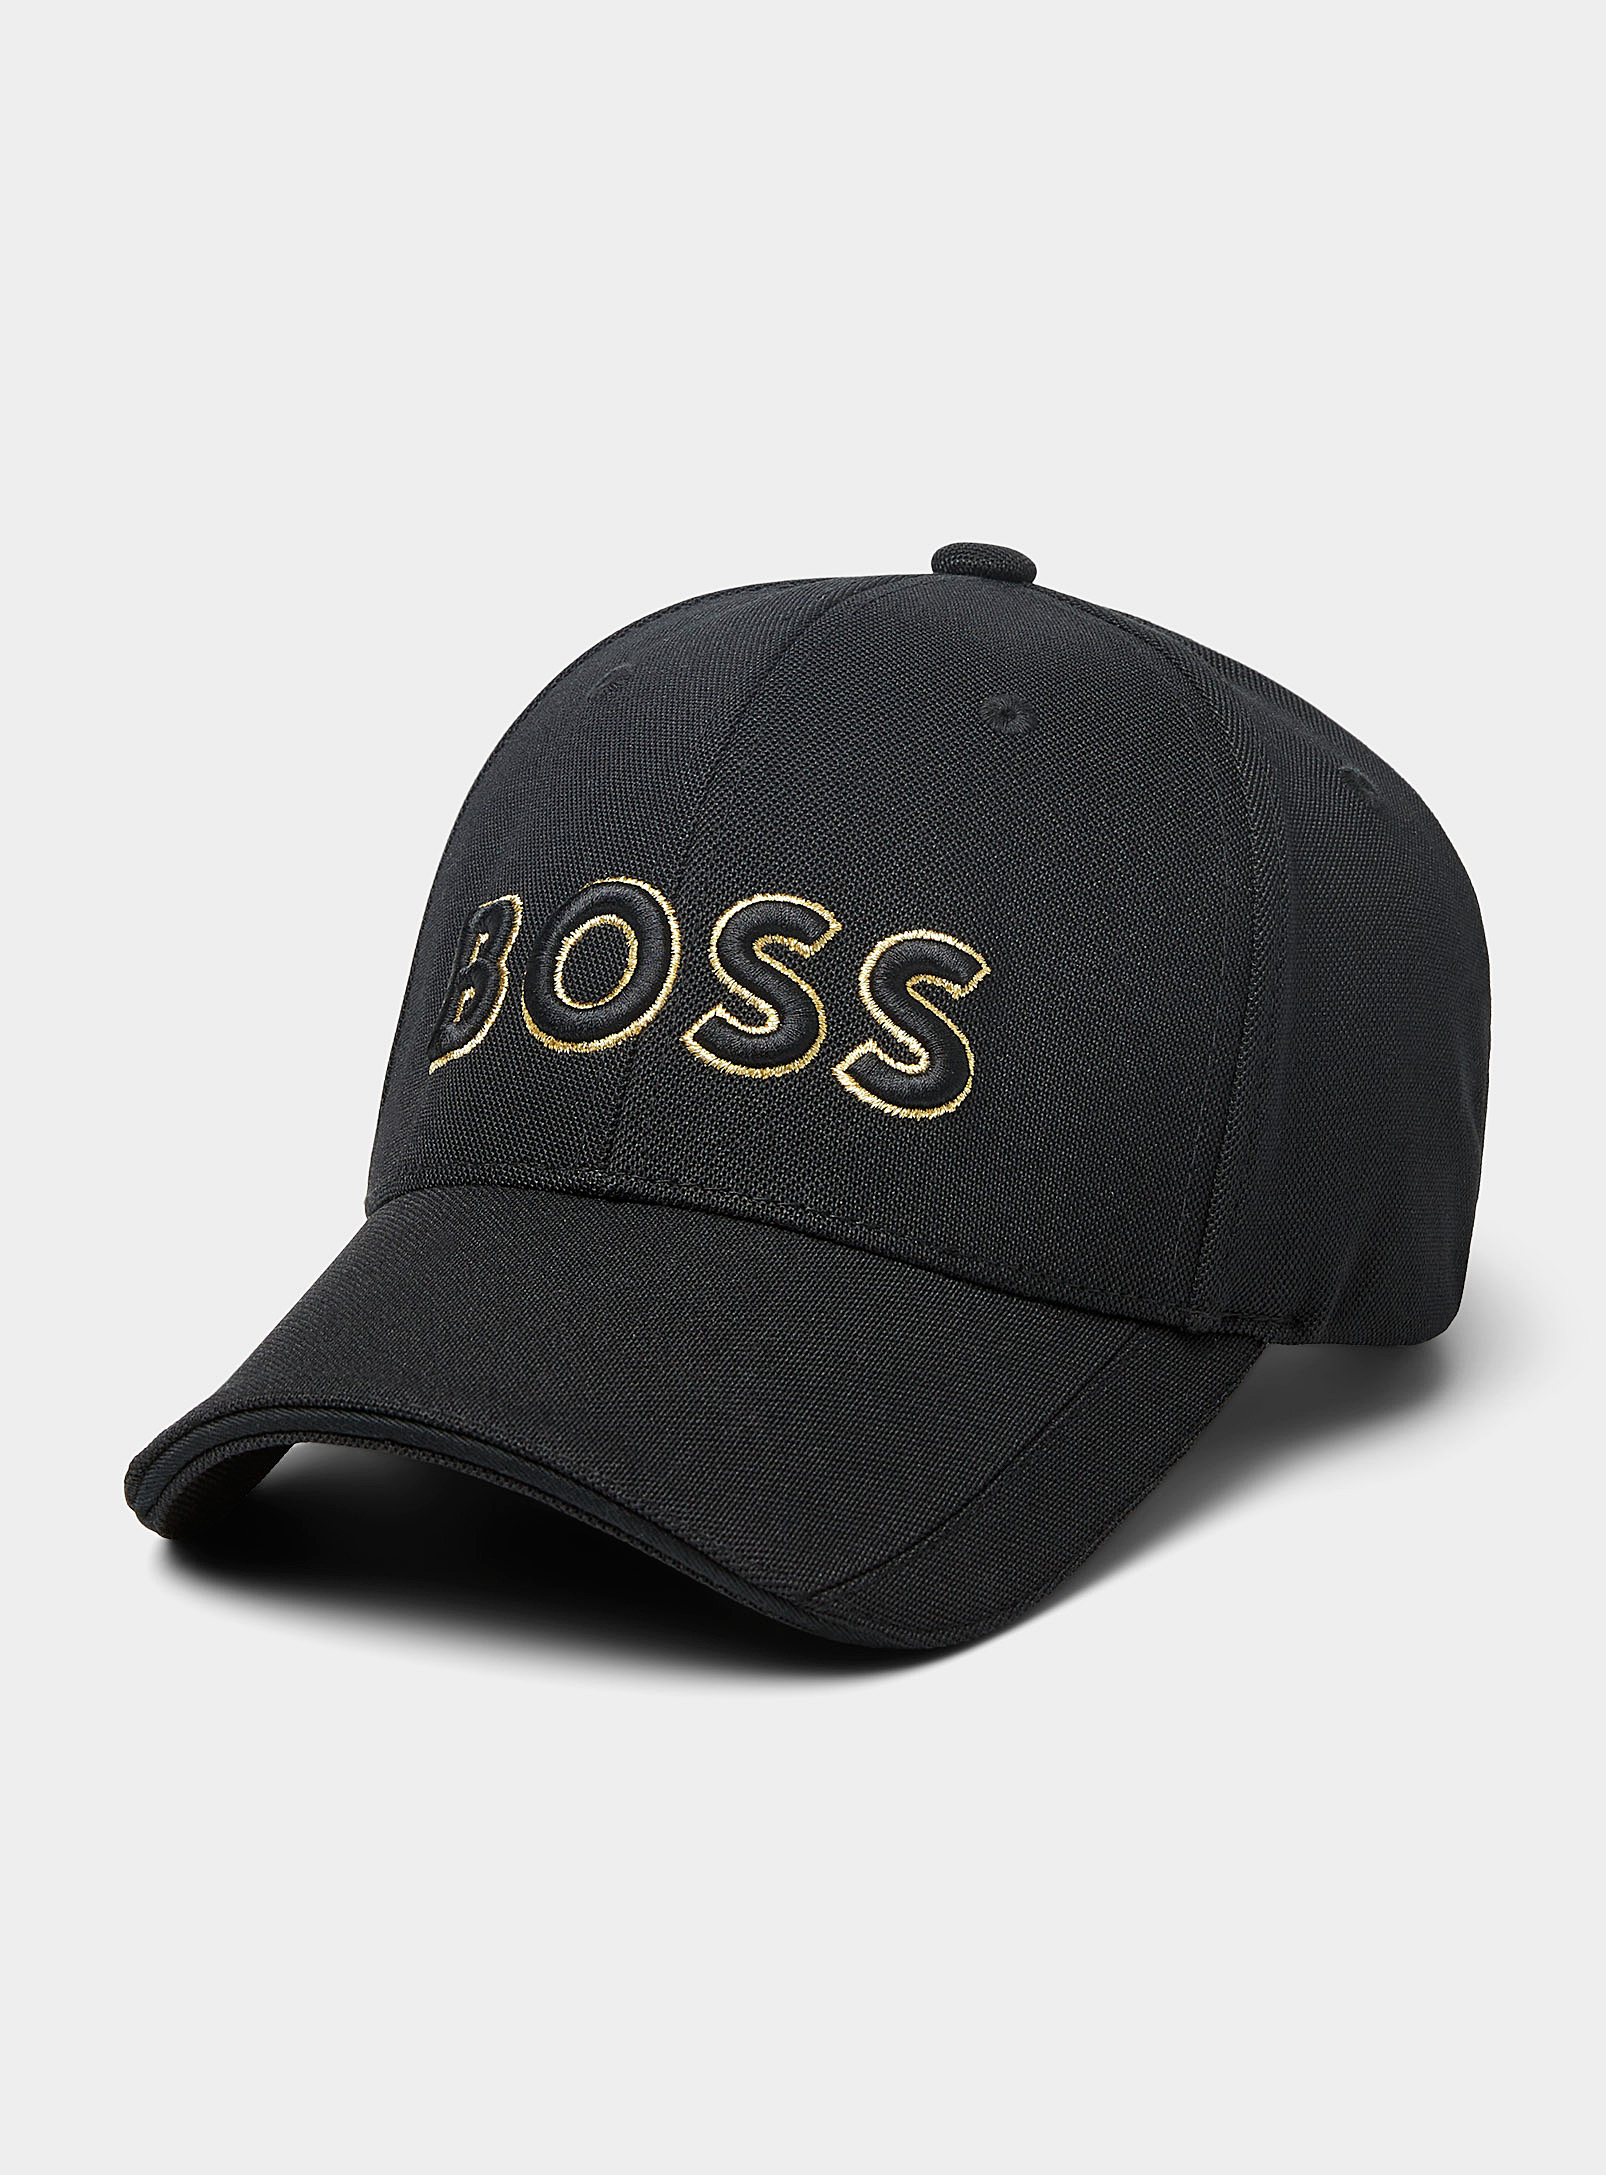 BOSS - La casquette piquée large logo